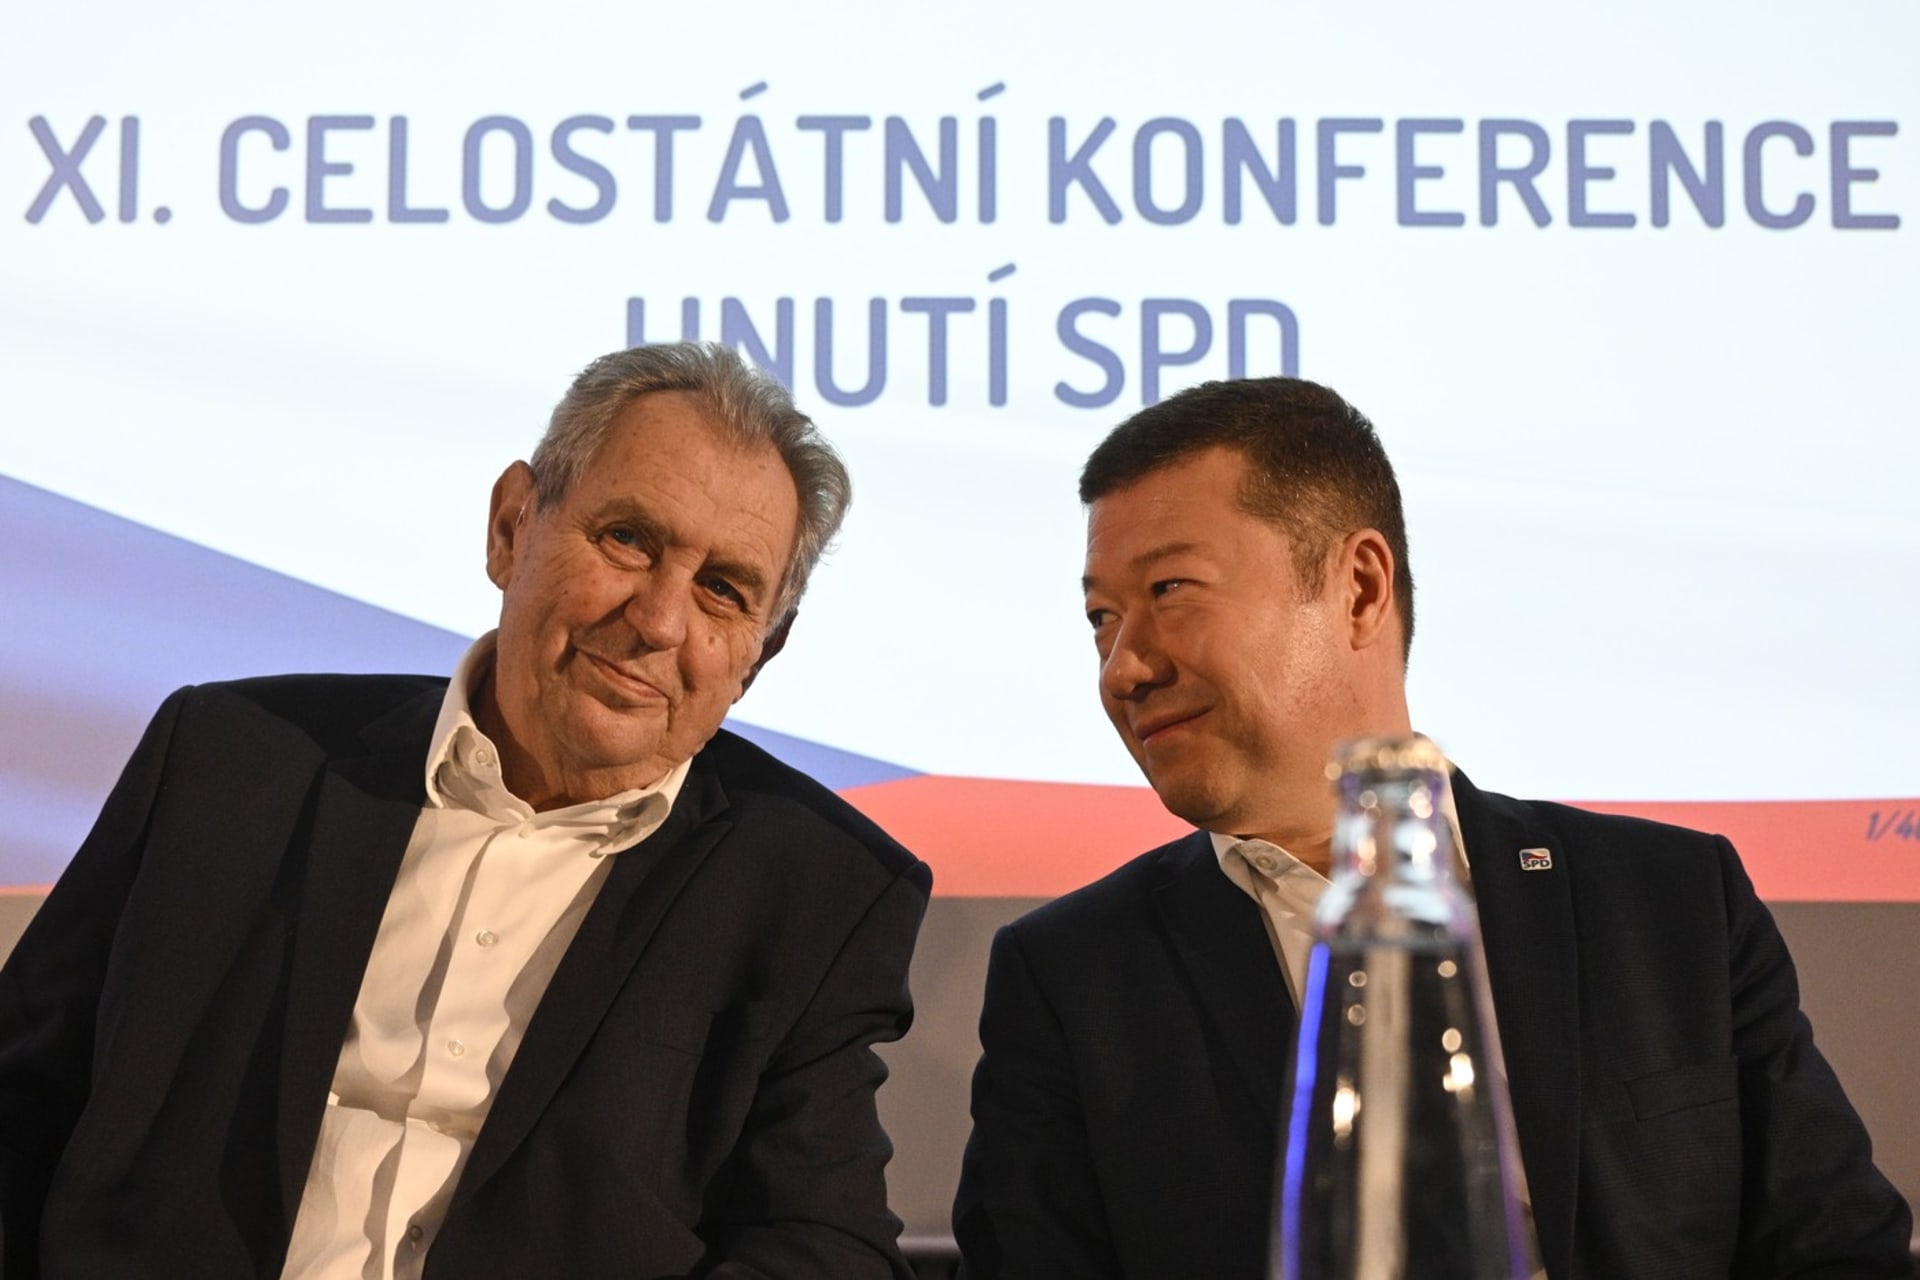 Exprezident Miloš Zeman a předseda SPD Tomio Okamura na celostátní konferenci hnutí